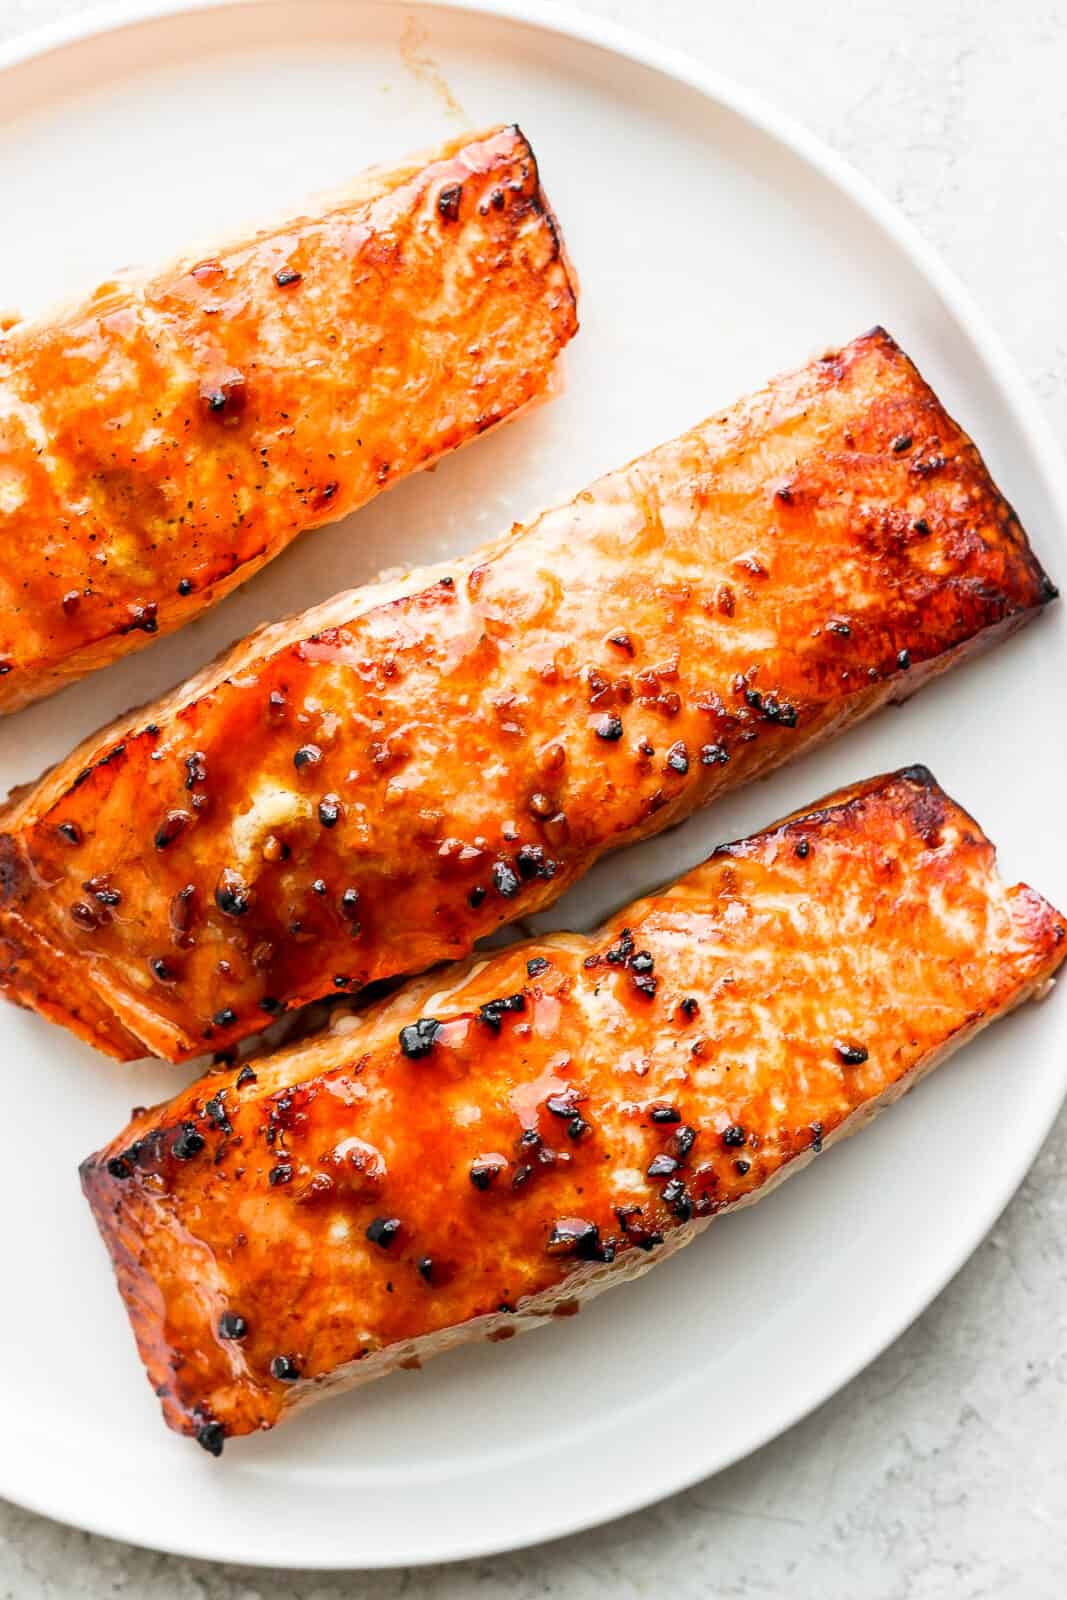 Cedar plank salmon on a plate.